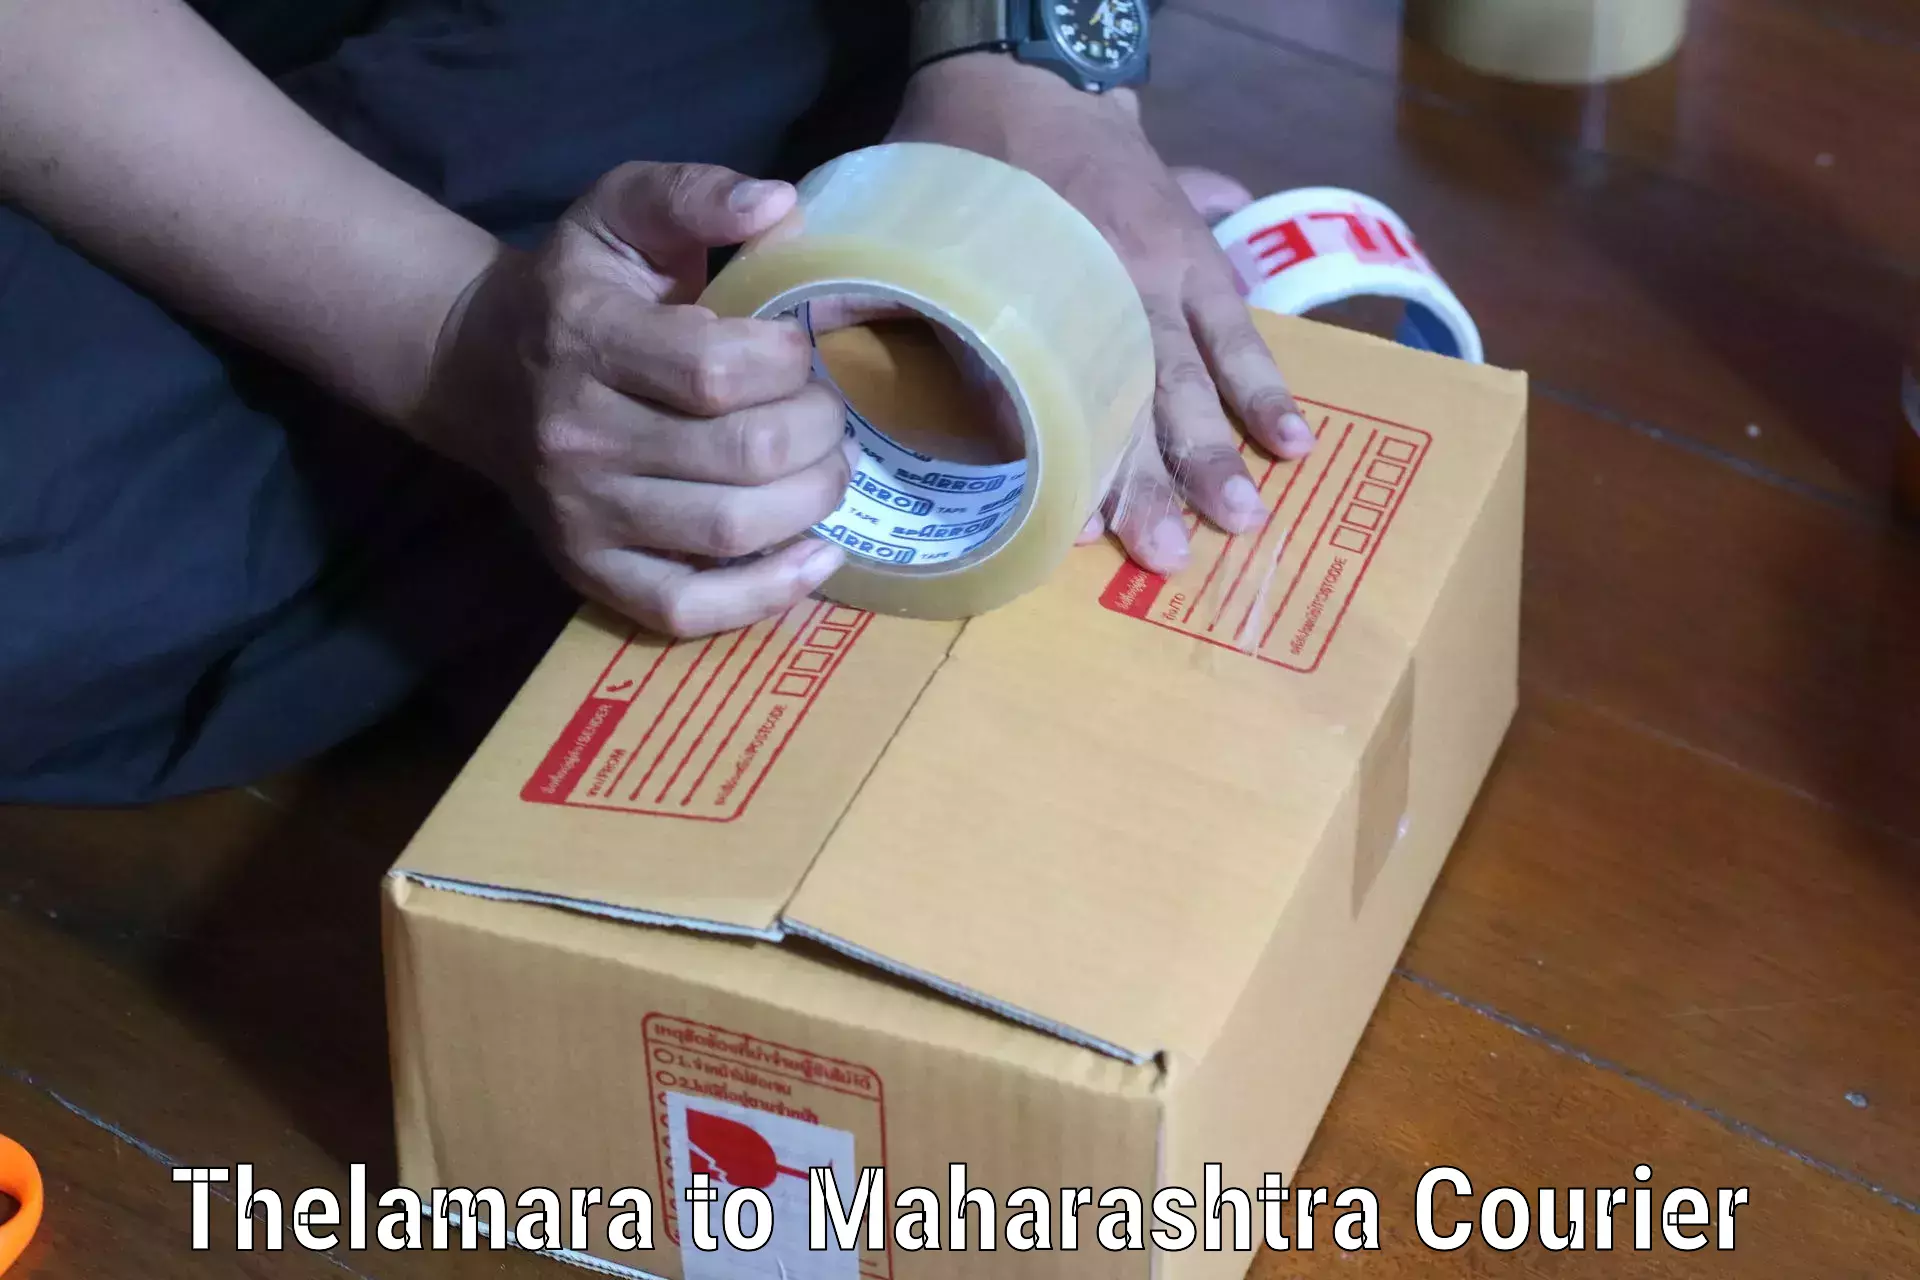 Cargo courier service Thelamara to Ahmednagar